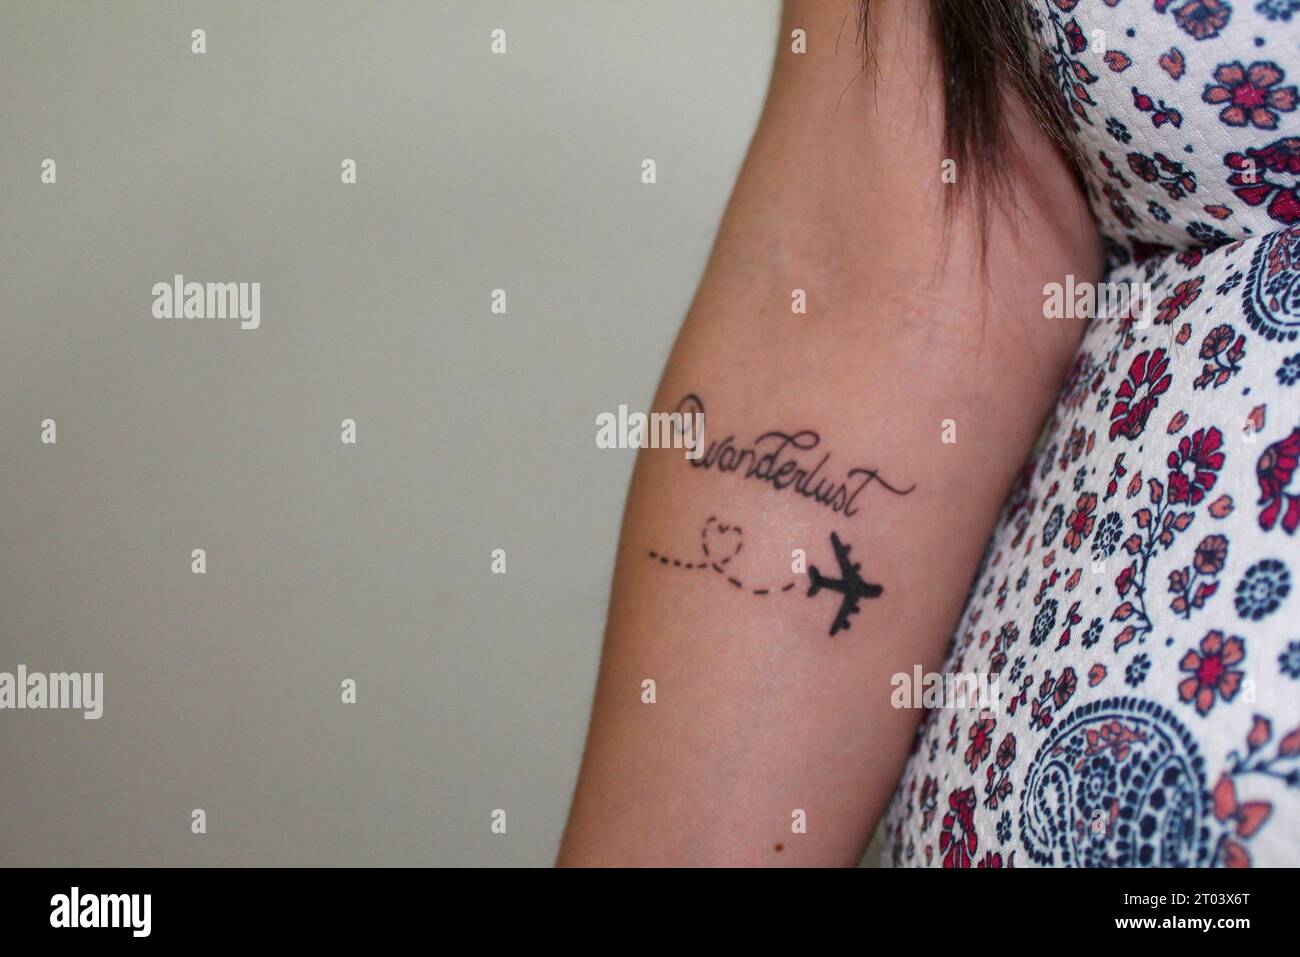 Airplane tattoo | Plane tattoo, Airplane tattoos, Aviation tattoo